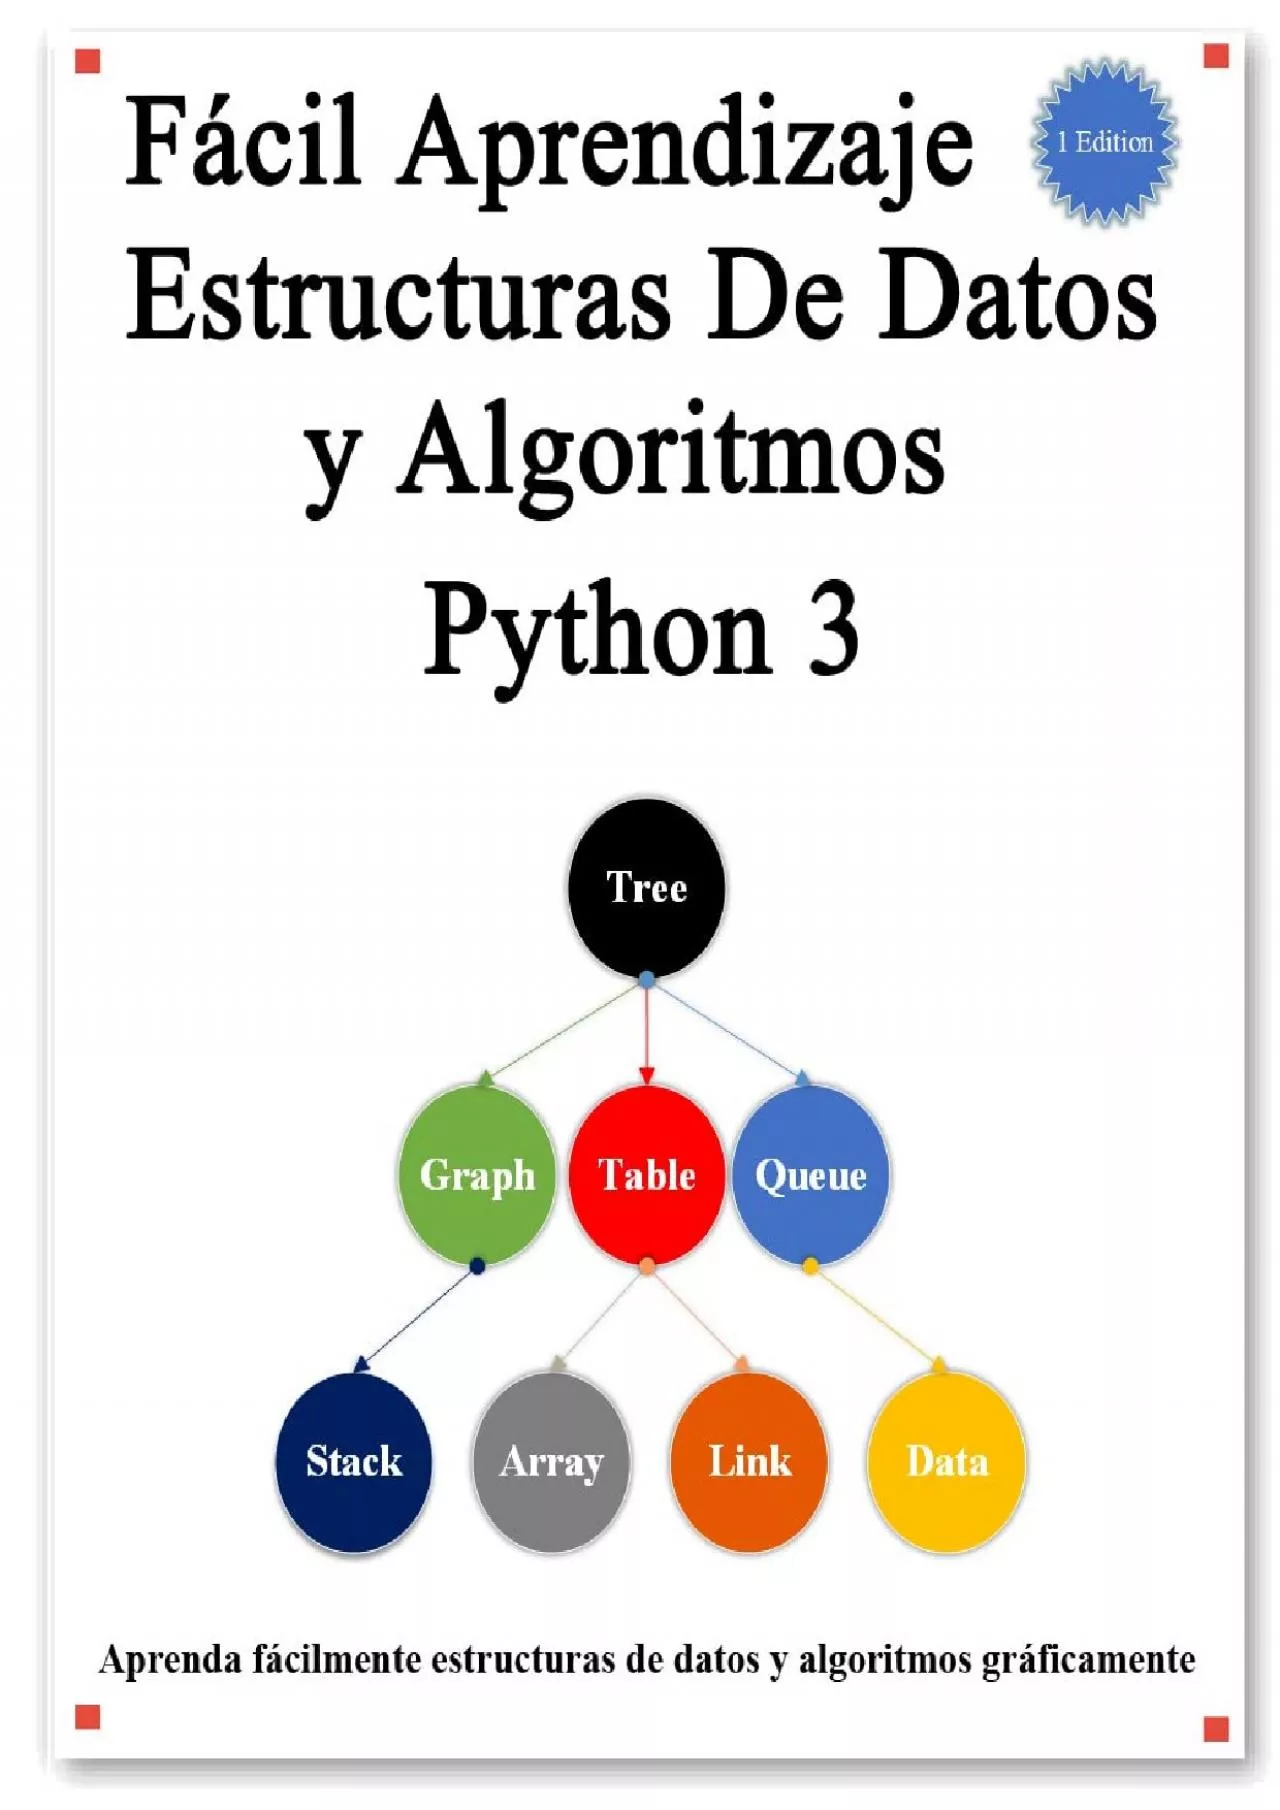 [FREE]-Fácil Aprendizaje Estructuras De Datos y Algoritmos Python 3 Aprenda gráficamente